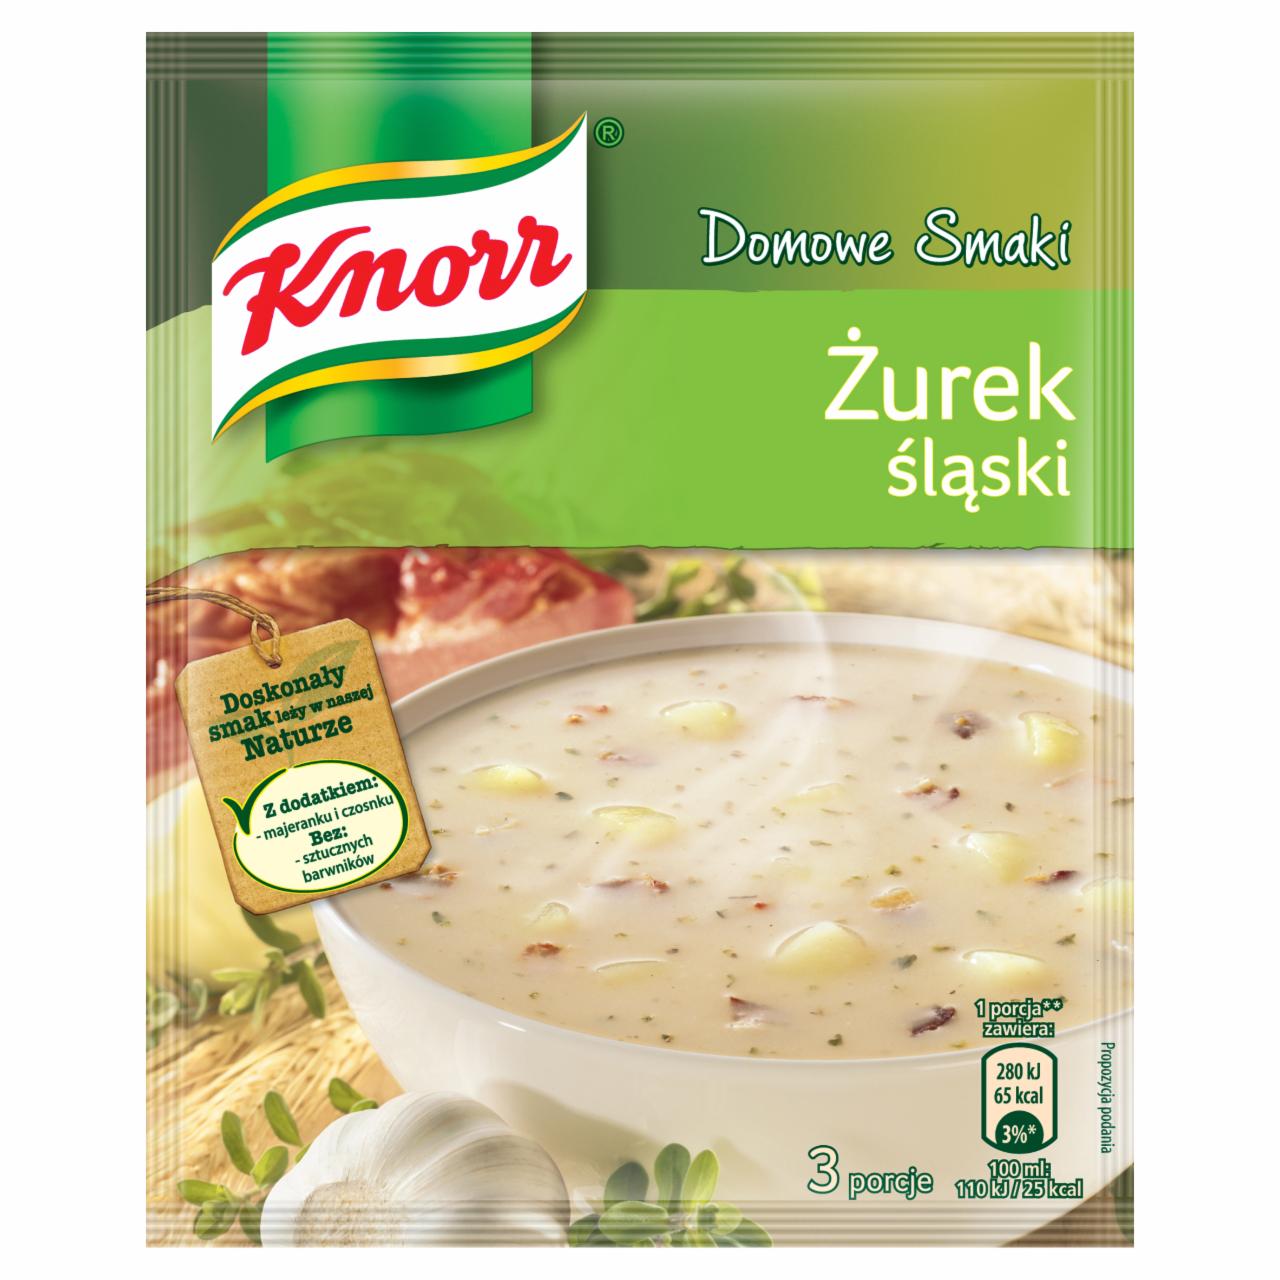 Zdjęcia - Knorr Domowe Smaki Żurek śląski 50 g